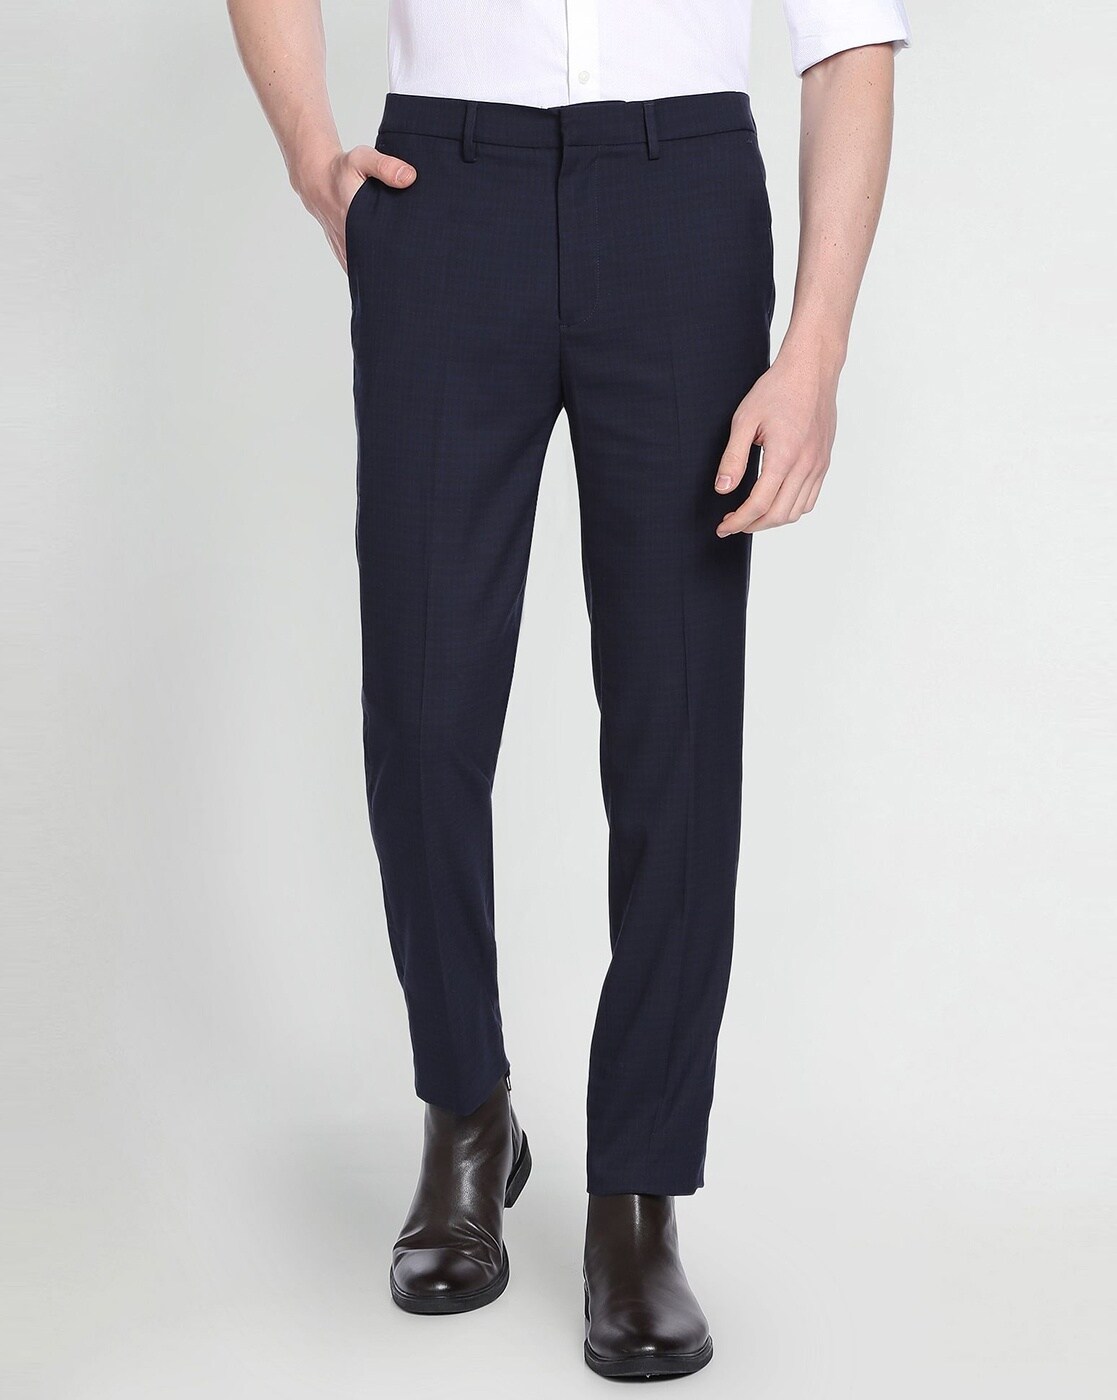 Men's Smart Trouser - Grey & Black | Konga Online Shopping